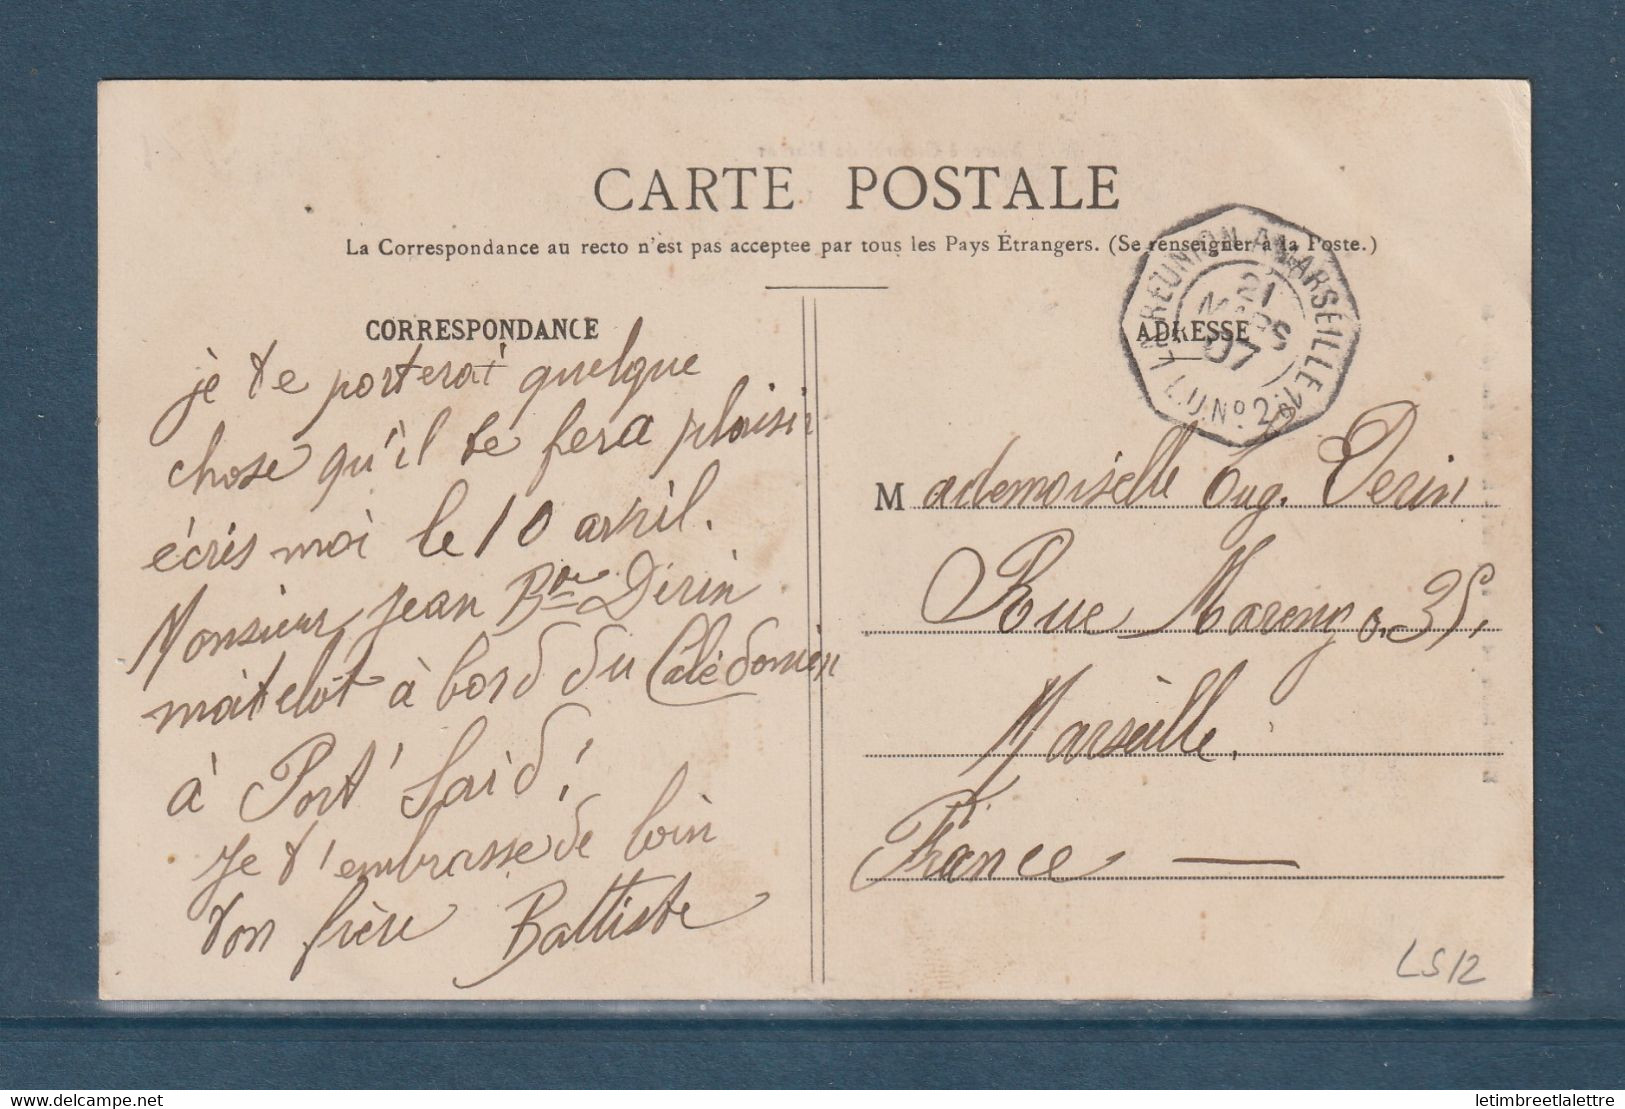 ⭐ Ethiopie - Carte Postale - Marché Central De Harrar - Diego Suarez Pour La France - Marseille à La Réunion - 1907 ⭐ - Ethiopie